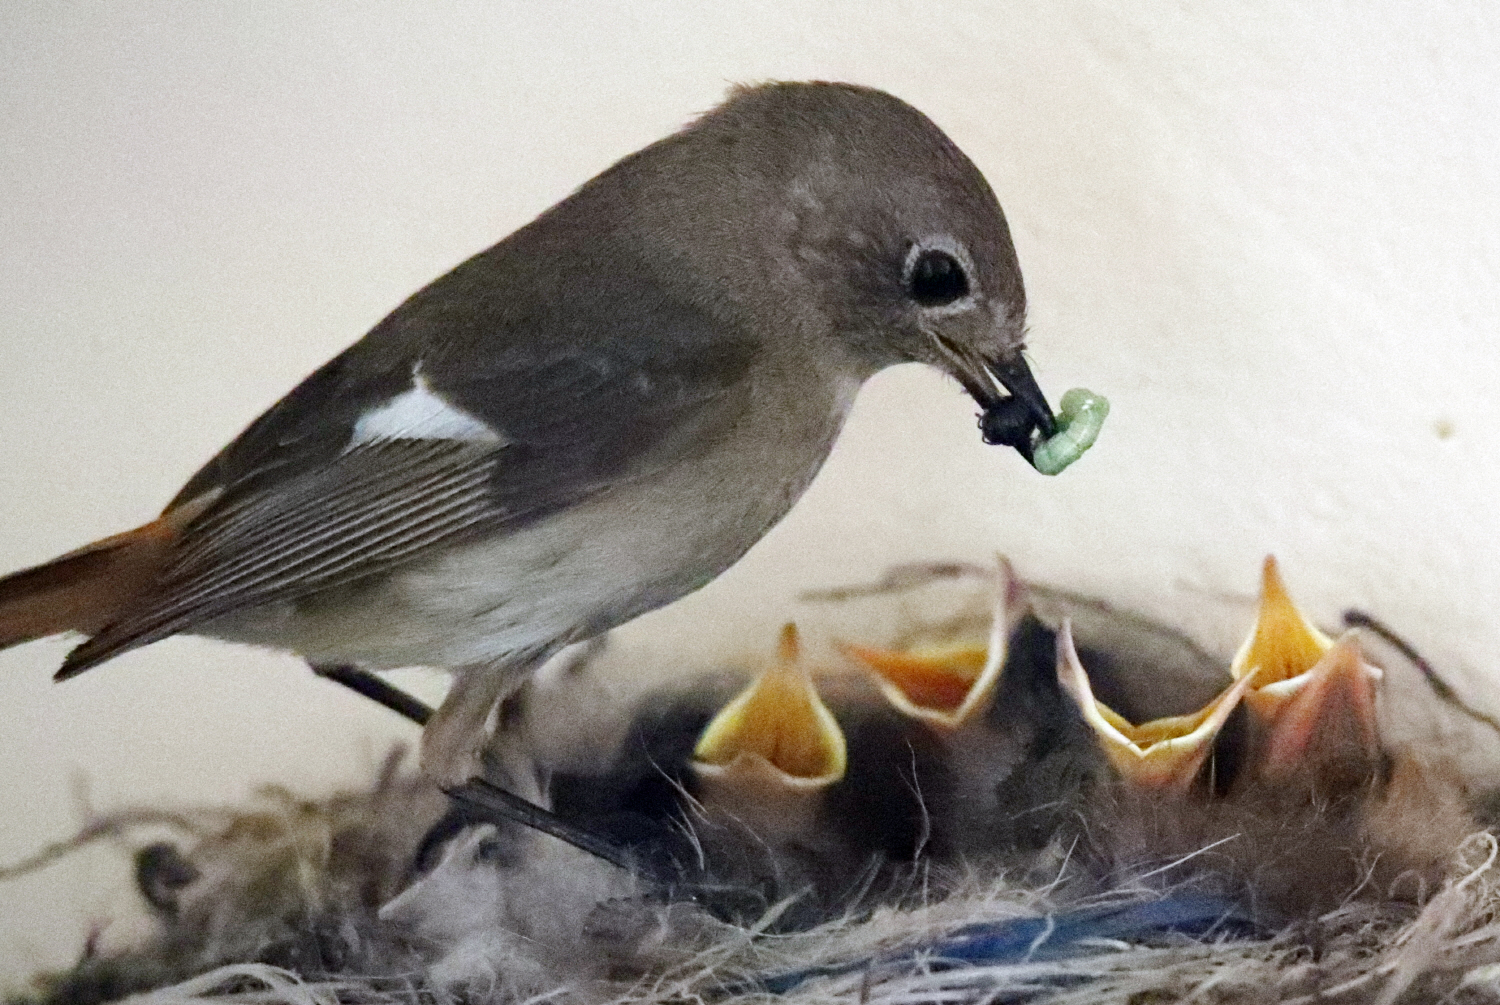 2일 포항시 북구 두호동 야산에 둥지를 튼 어미 딱새가 새끼들에게 먹이를 물어다 먹이고 있다. 이은성 기자 sky@kyongbuk.com